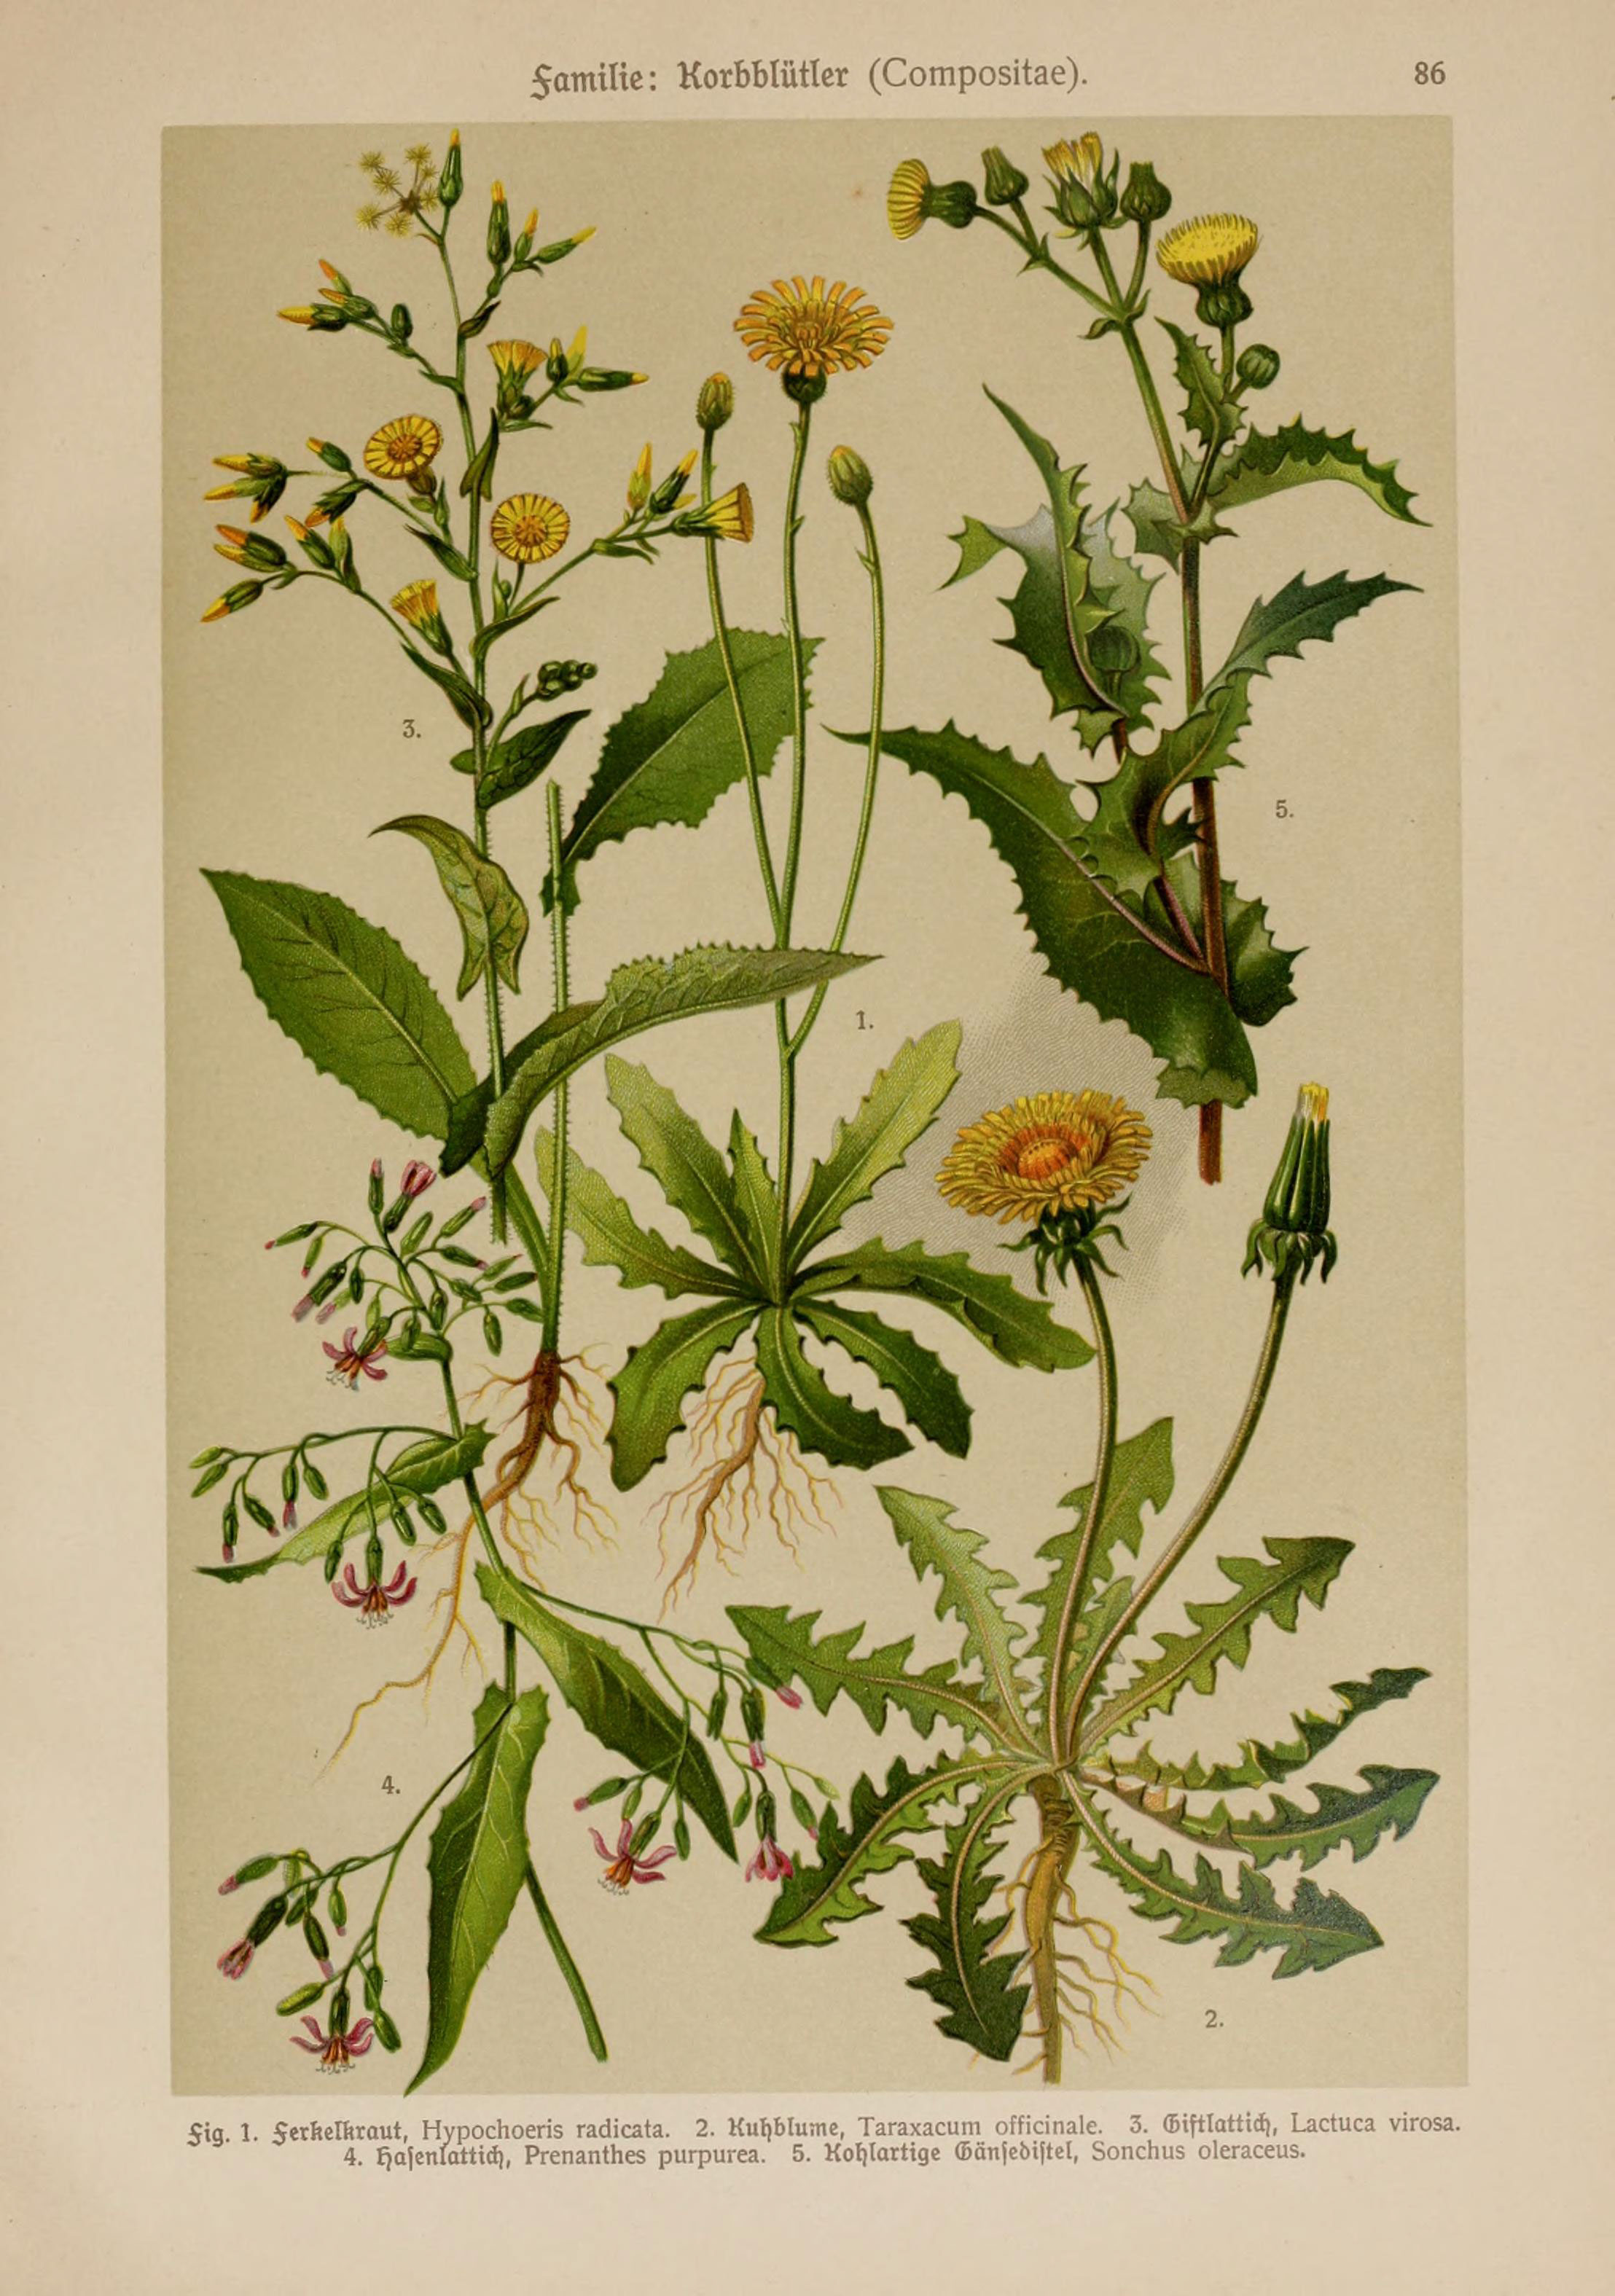 Hoffmann-Dennert botanischer Bilderatlas (Taf. 86) (6425026295)